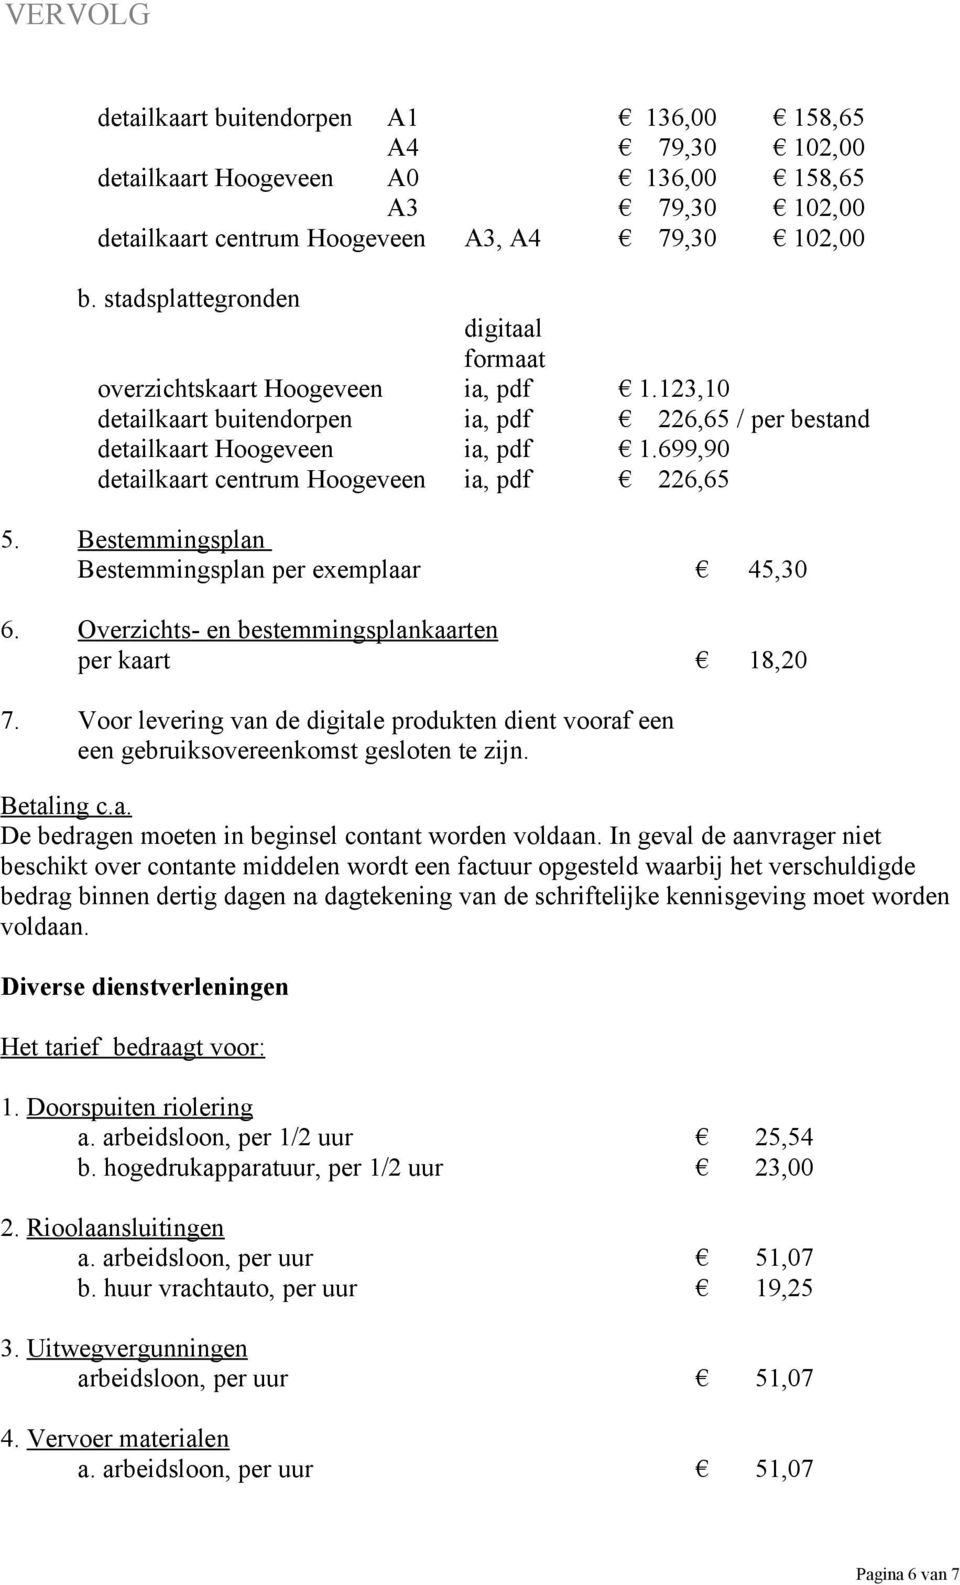 699,90 detailkaart centrum Hoogeveen ia, pdf 226,65 5. Bestemmingsplan Bestemmingsplan per exemplaar 45,30 6. Overzichts- en bestemmingsplankaarten per kaart 18,20 7.